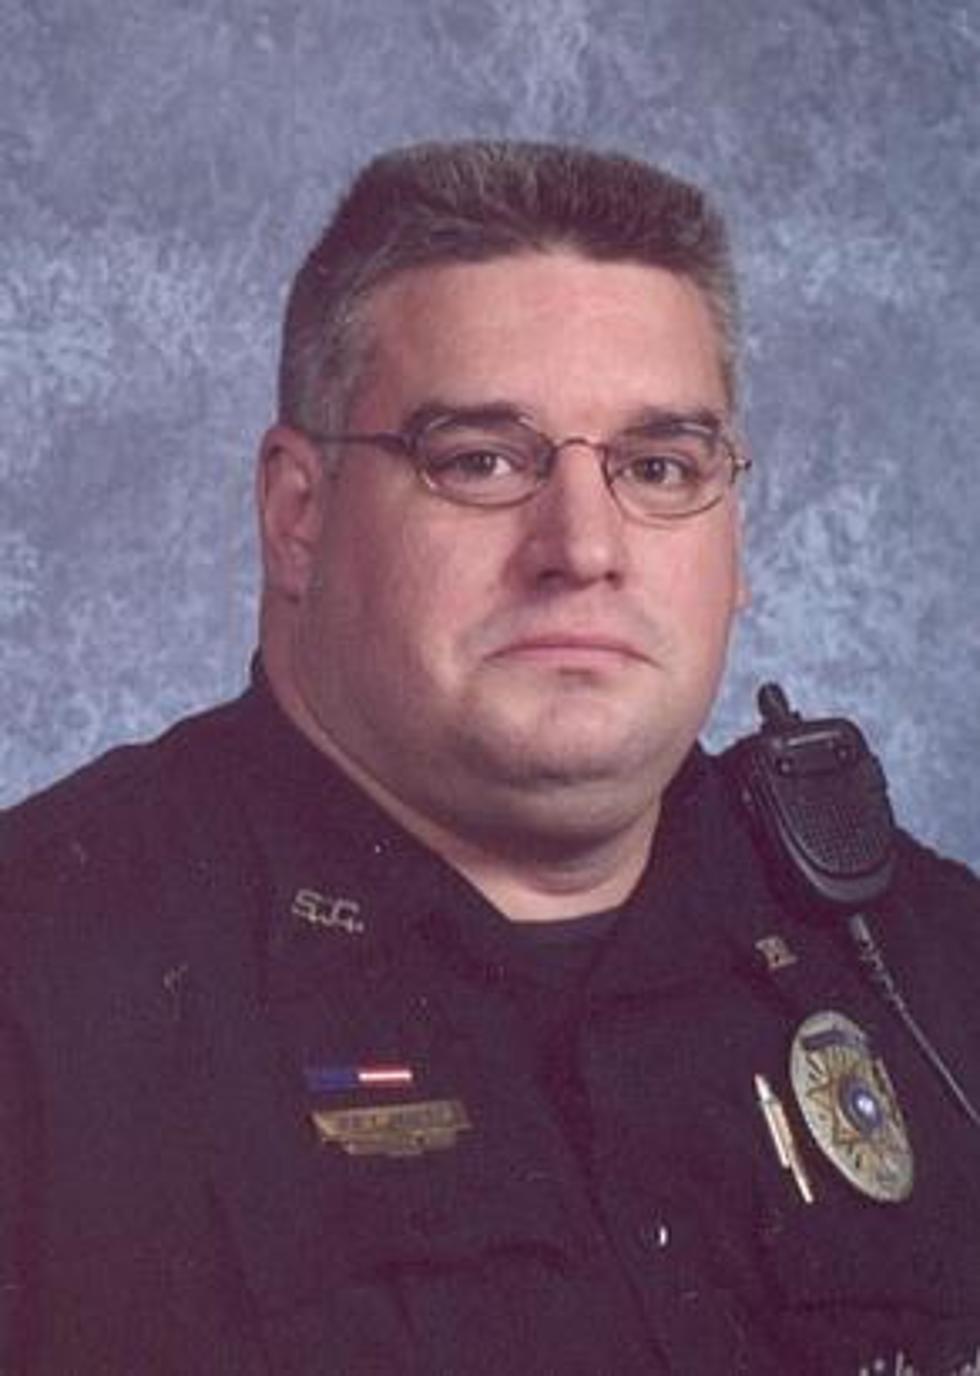 Scott Police Officer Taken After Cancer Battle